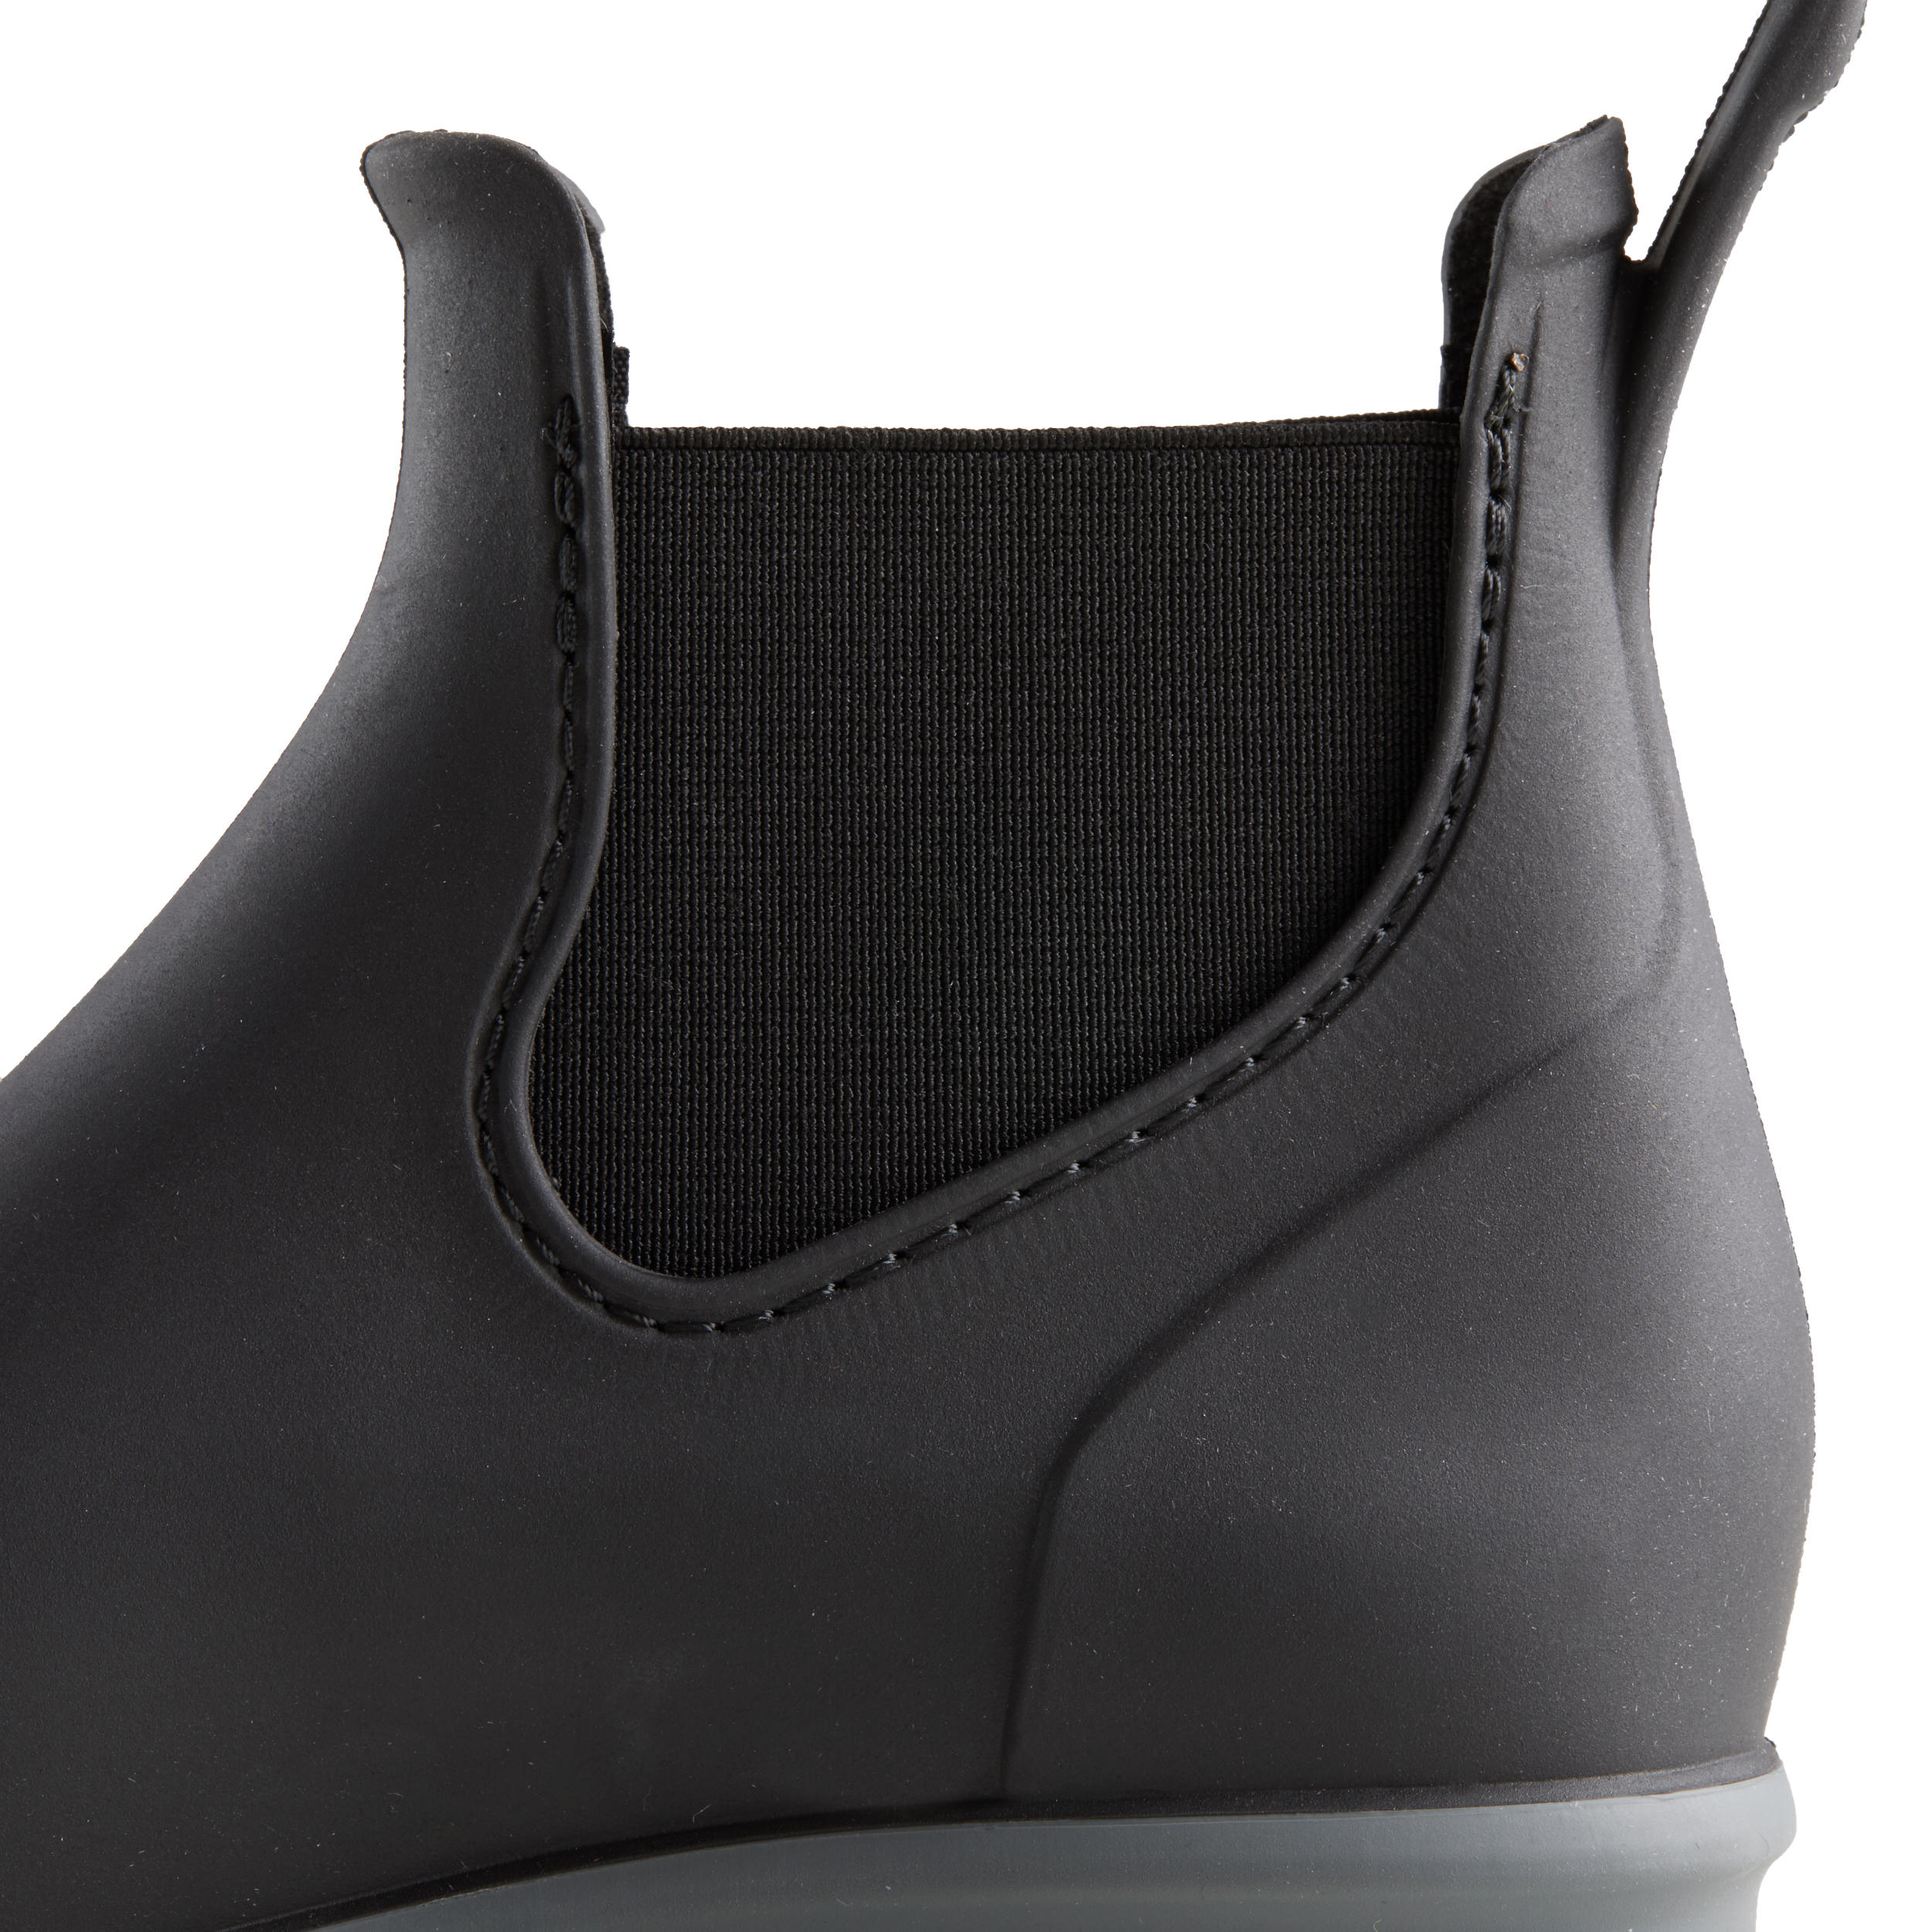 Boots d'équitation enfant - 100 noir/gris - FOUGANZA